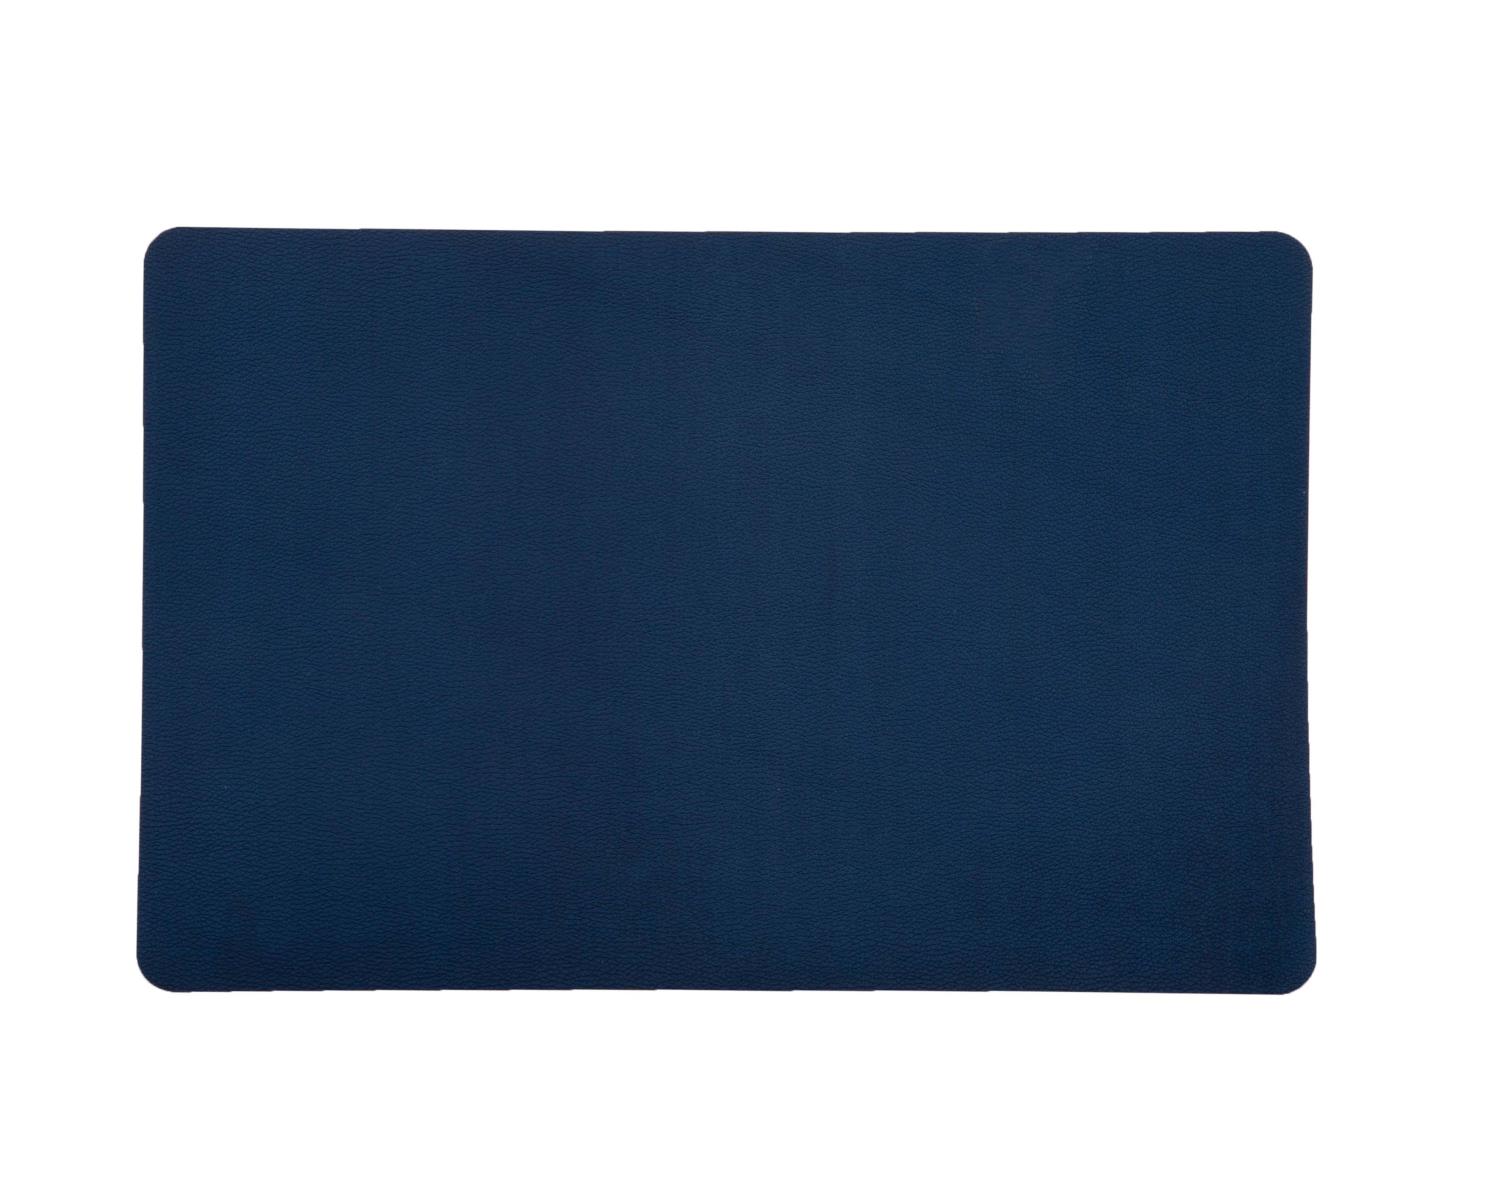 Spisebrikke West marineblå 43,5x28,5 cm